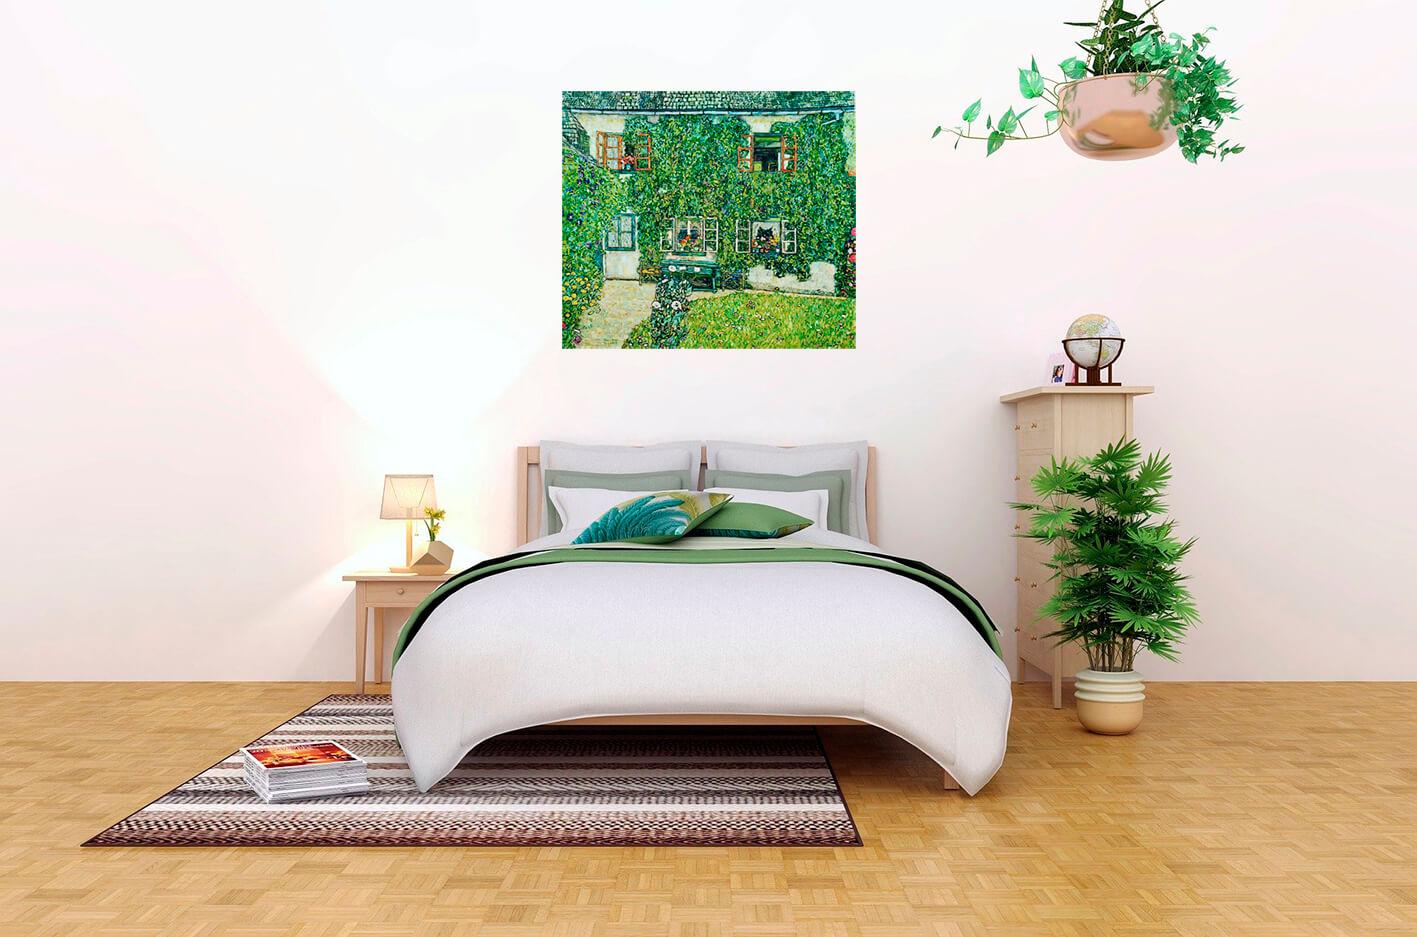 Bilde Gustavs Klimts - māja Veisenbahā pie Aterzē ezera 3